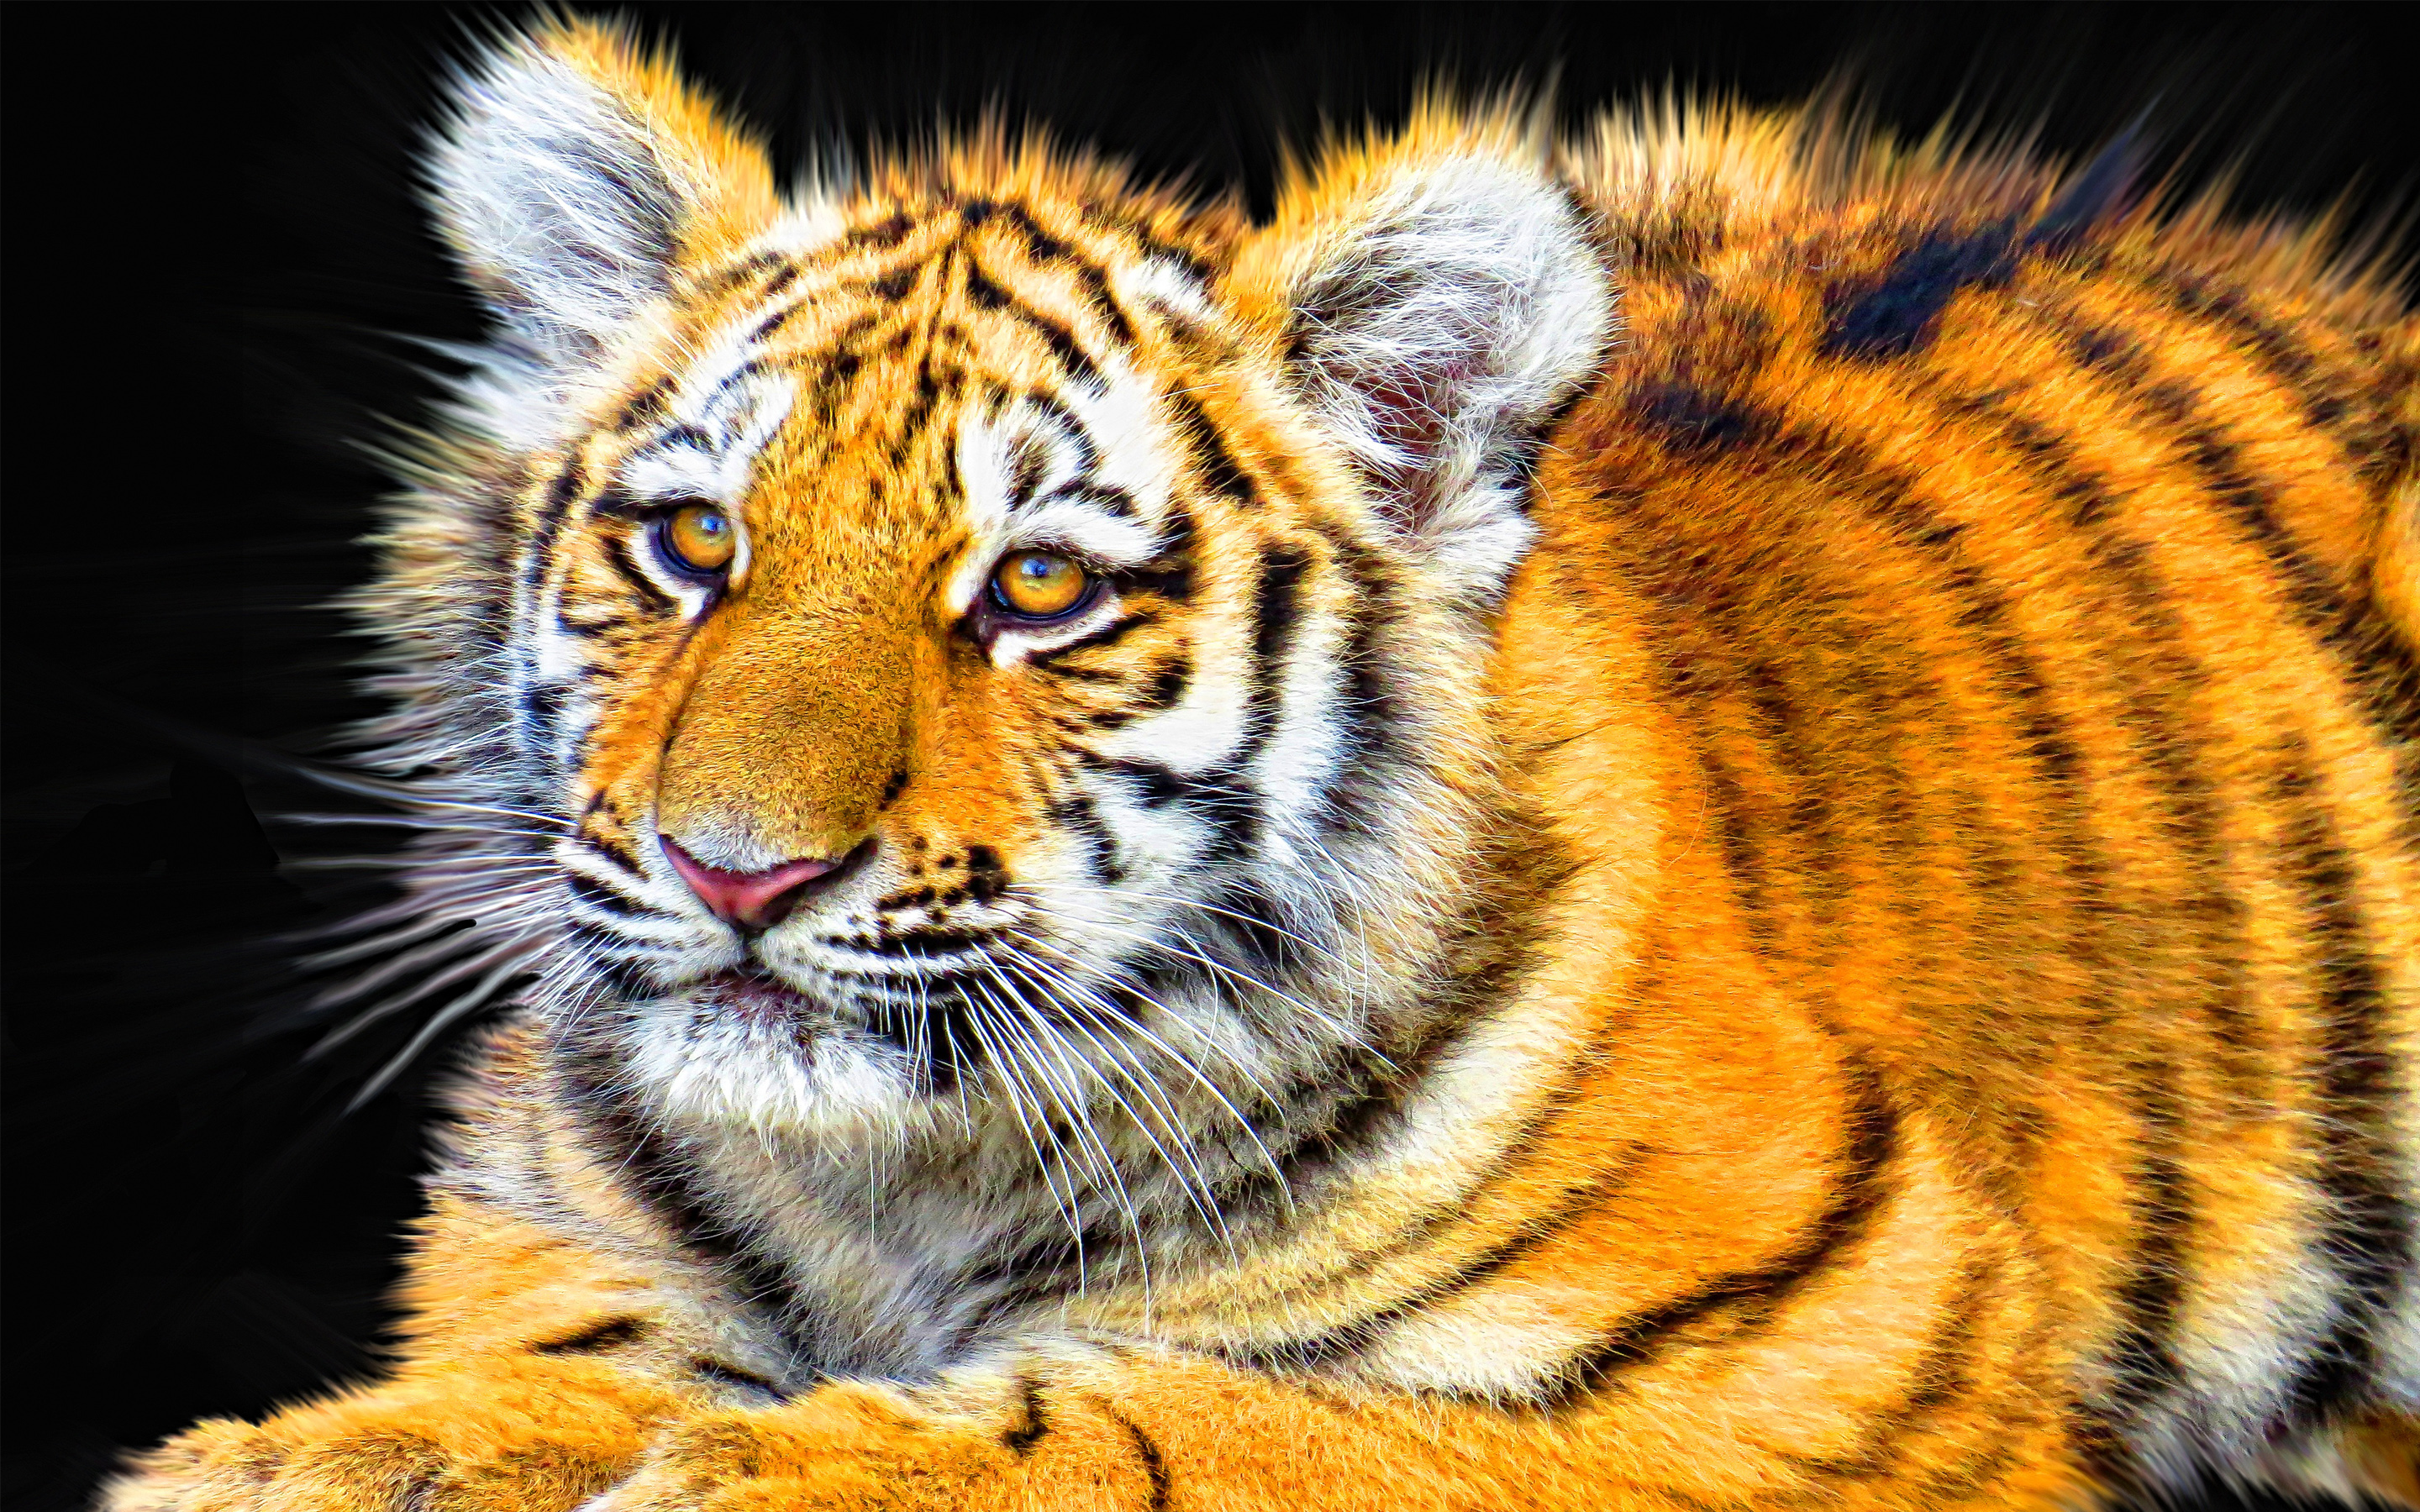 Tiger Cub8131418443 - Tiger Cub - Tiger, Femle